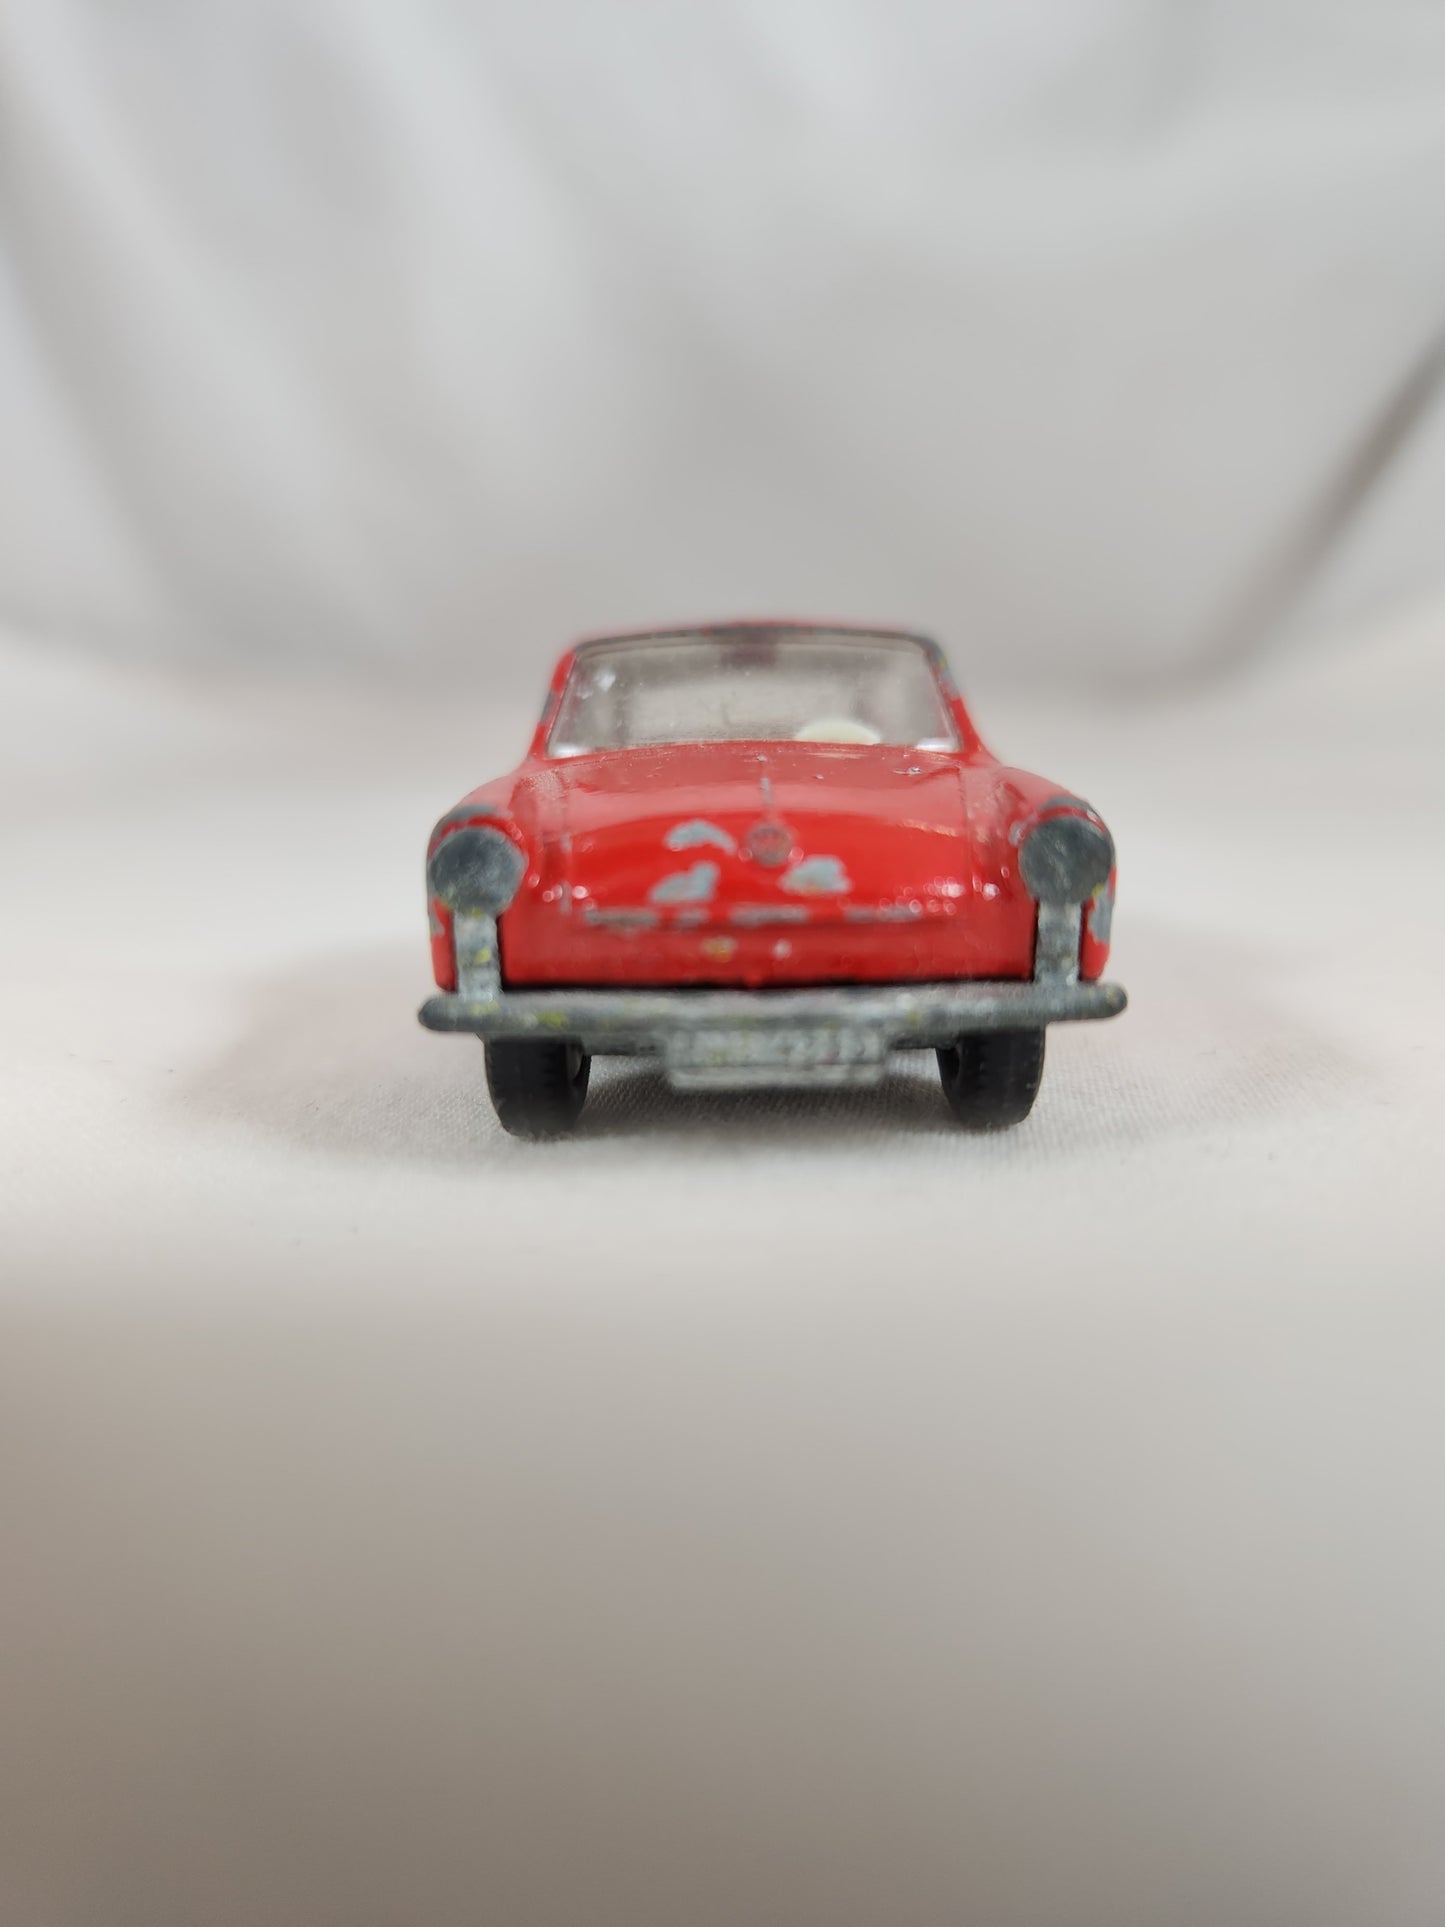 VTG - Matchbox Red Volkswagen 1600TL #67 by Lesney